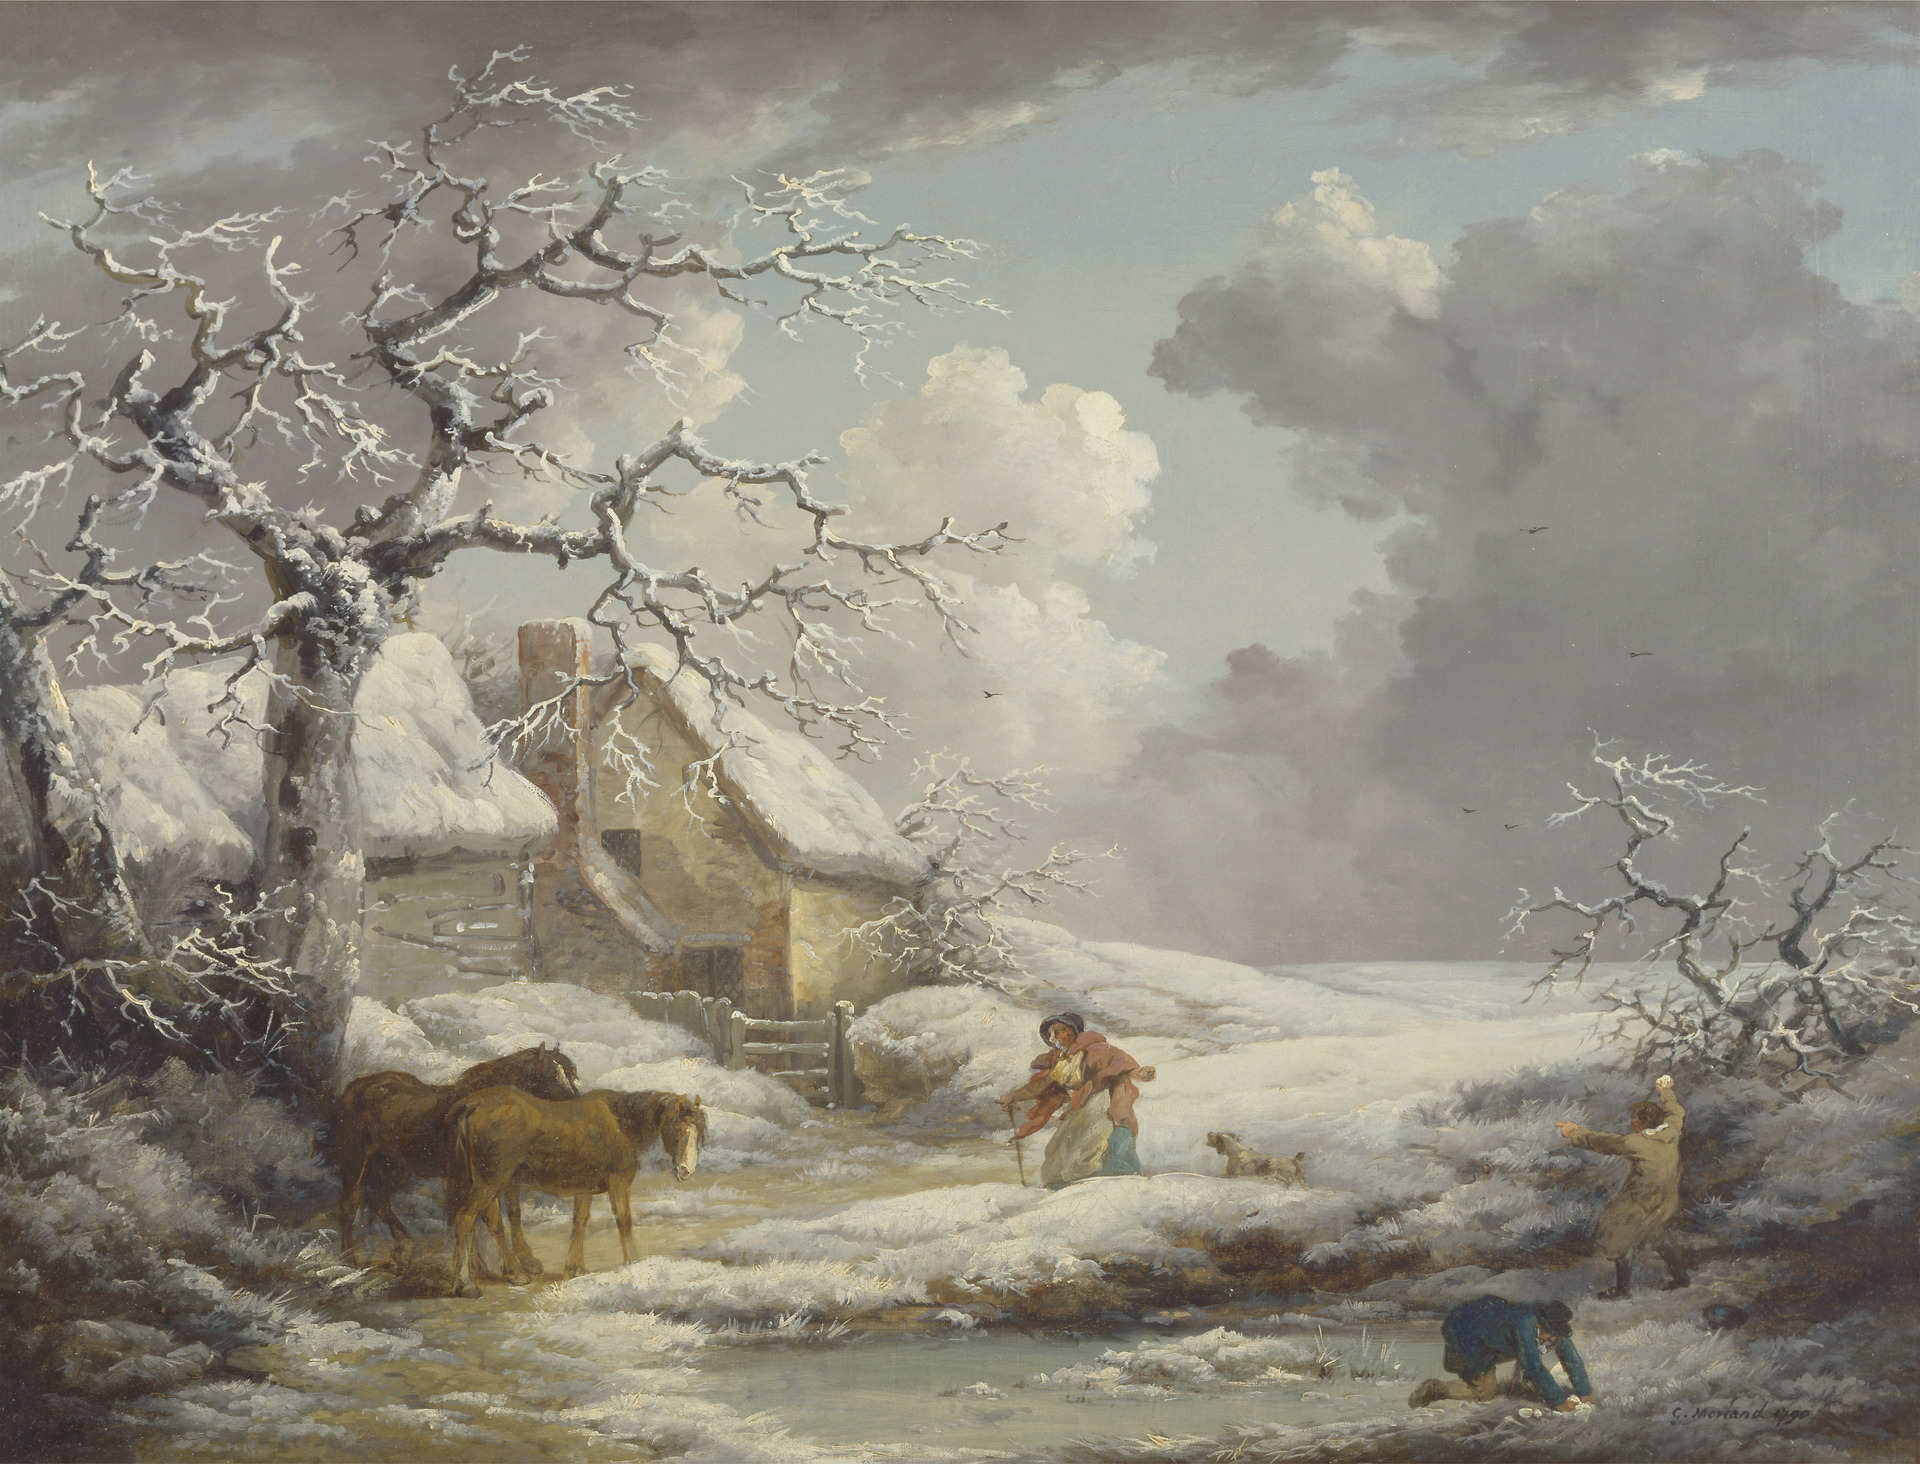 Winter Landscape. George Morland. 1790. 